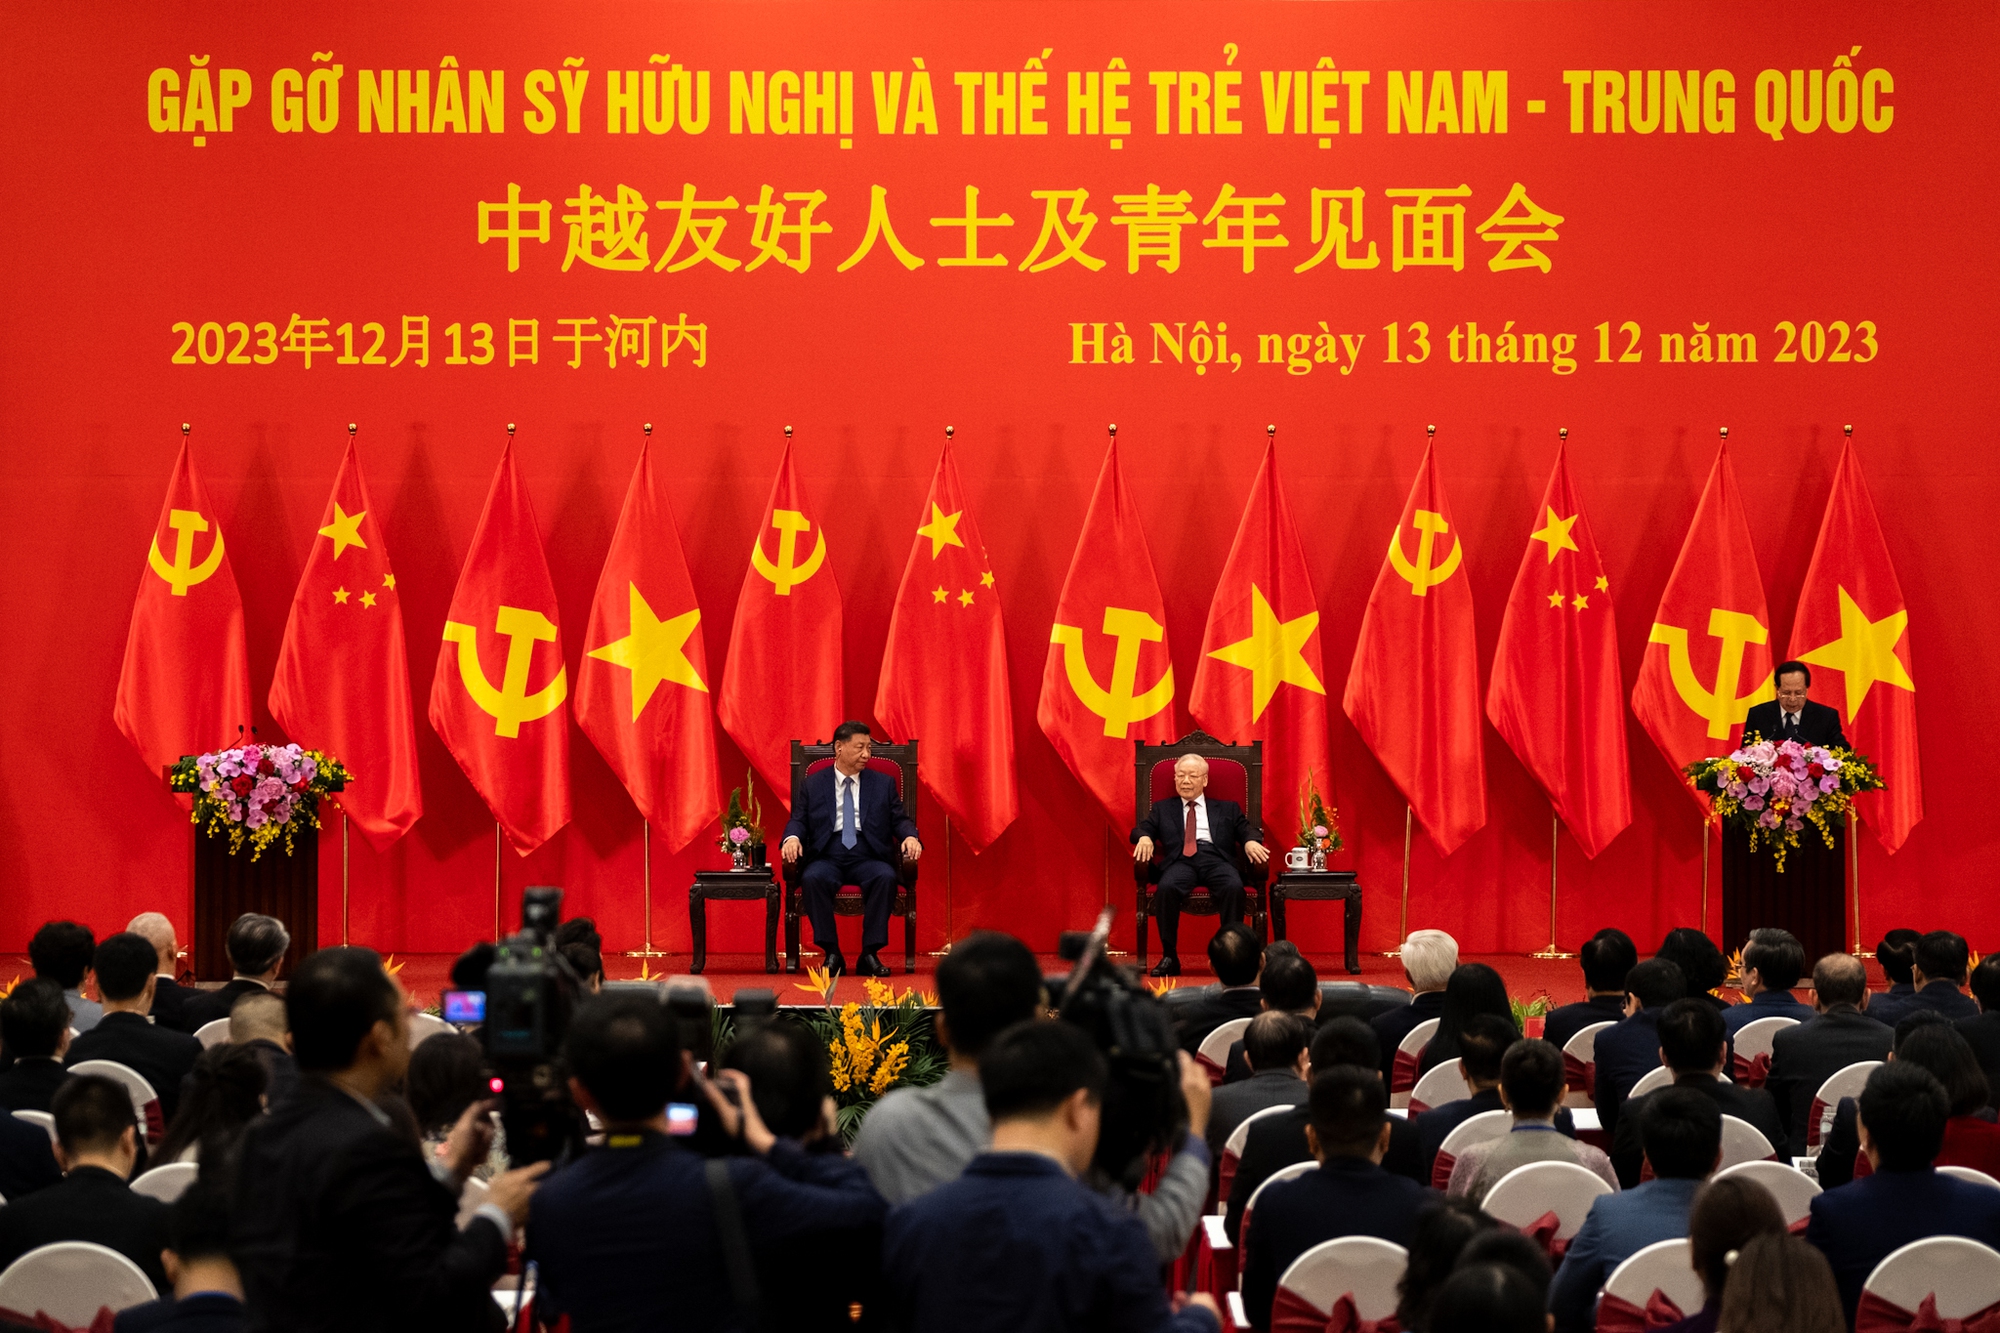 Tổng Bí thư Nguyễn Phú Trọng và Tổng Bí thư, Chủ tịch nước Trung Quốc gặp gỡ nhân sỹ hữu nghị và thế hệ trẻ Việt-Trung - Ảnh 10.